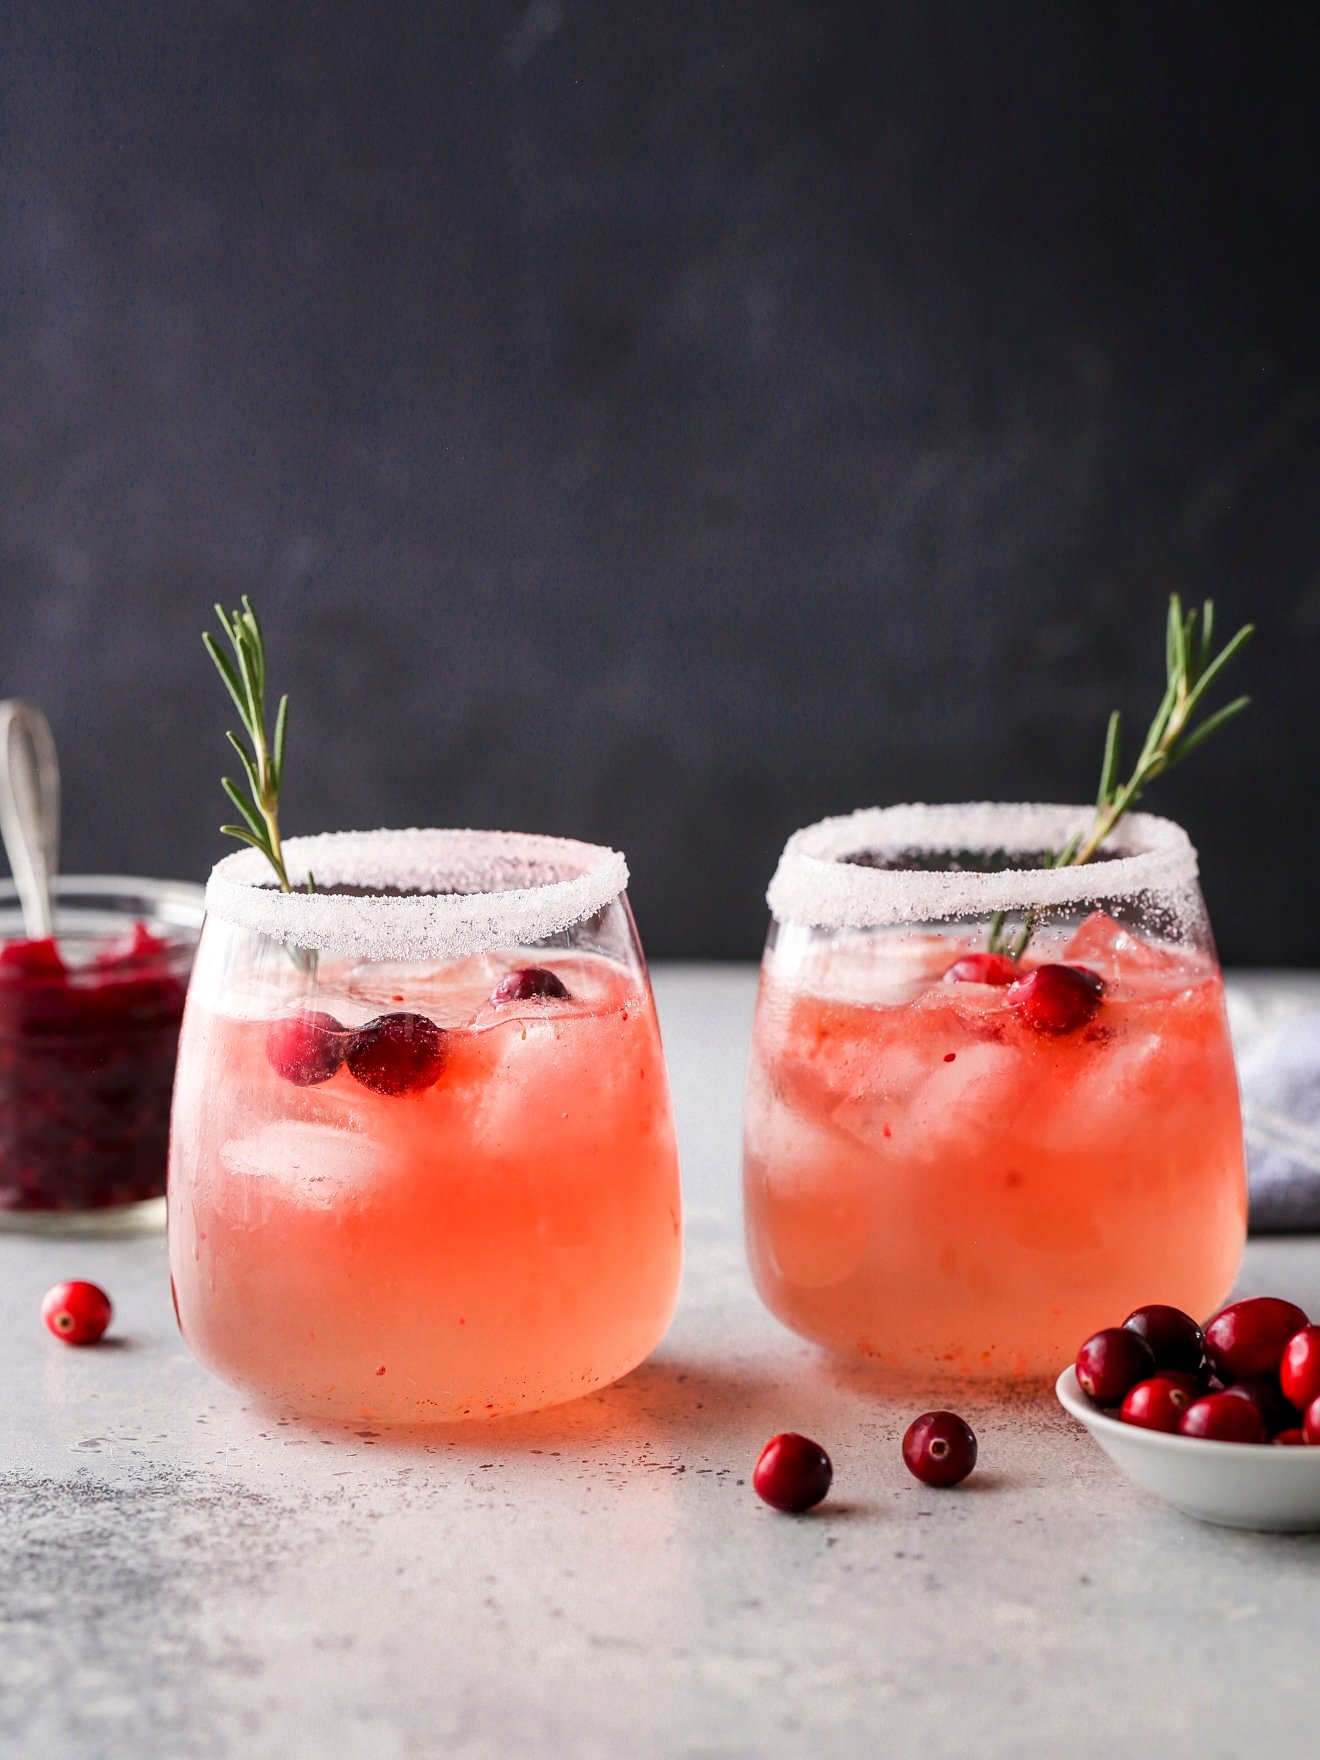 Cranberry gin fizz recipe